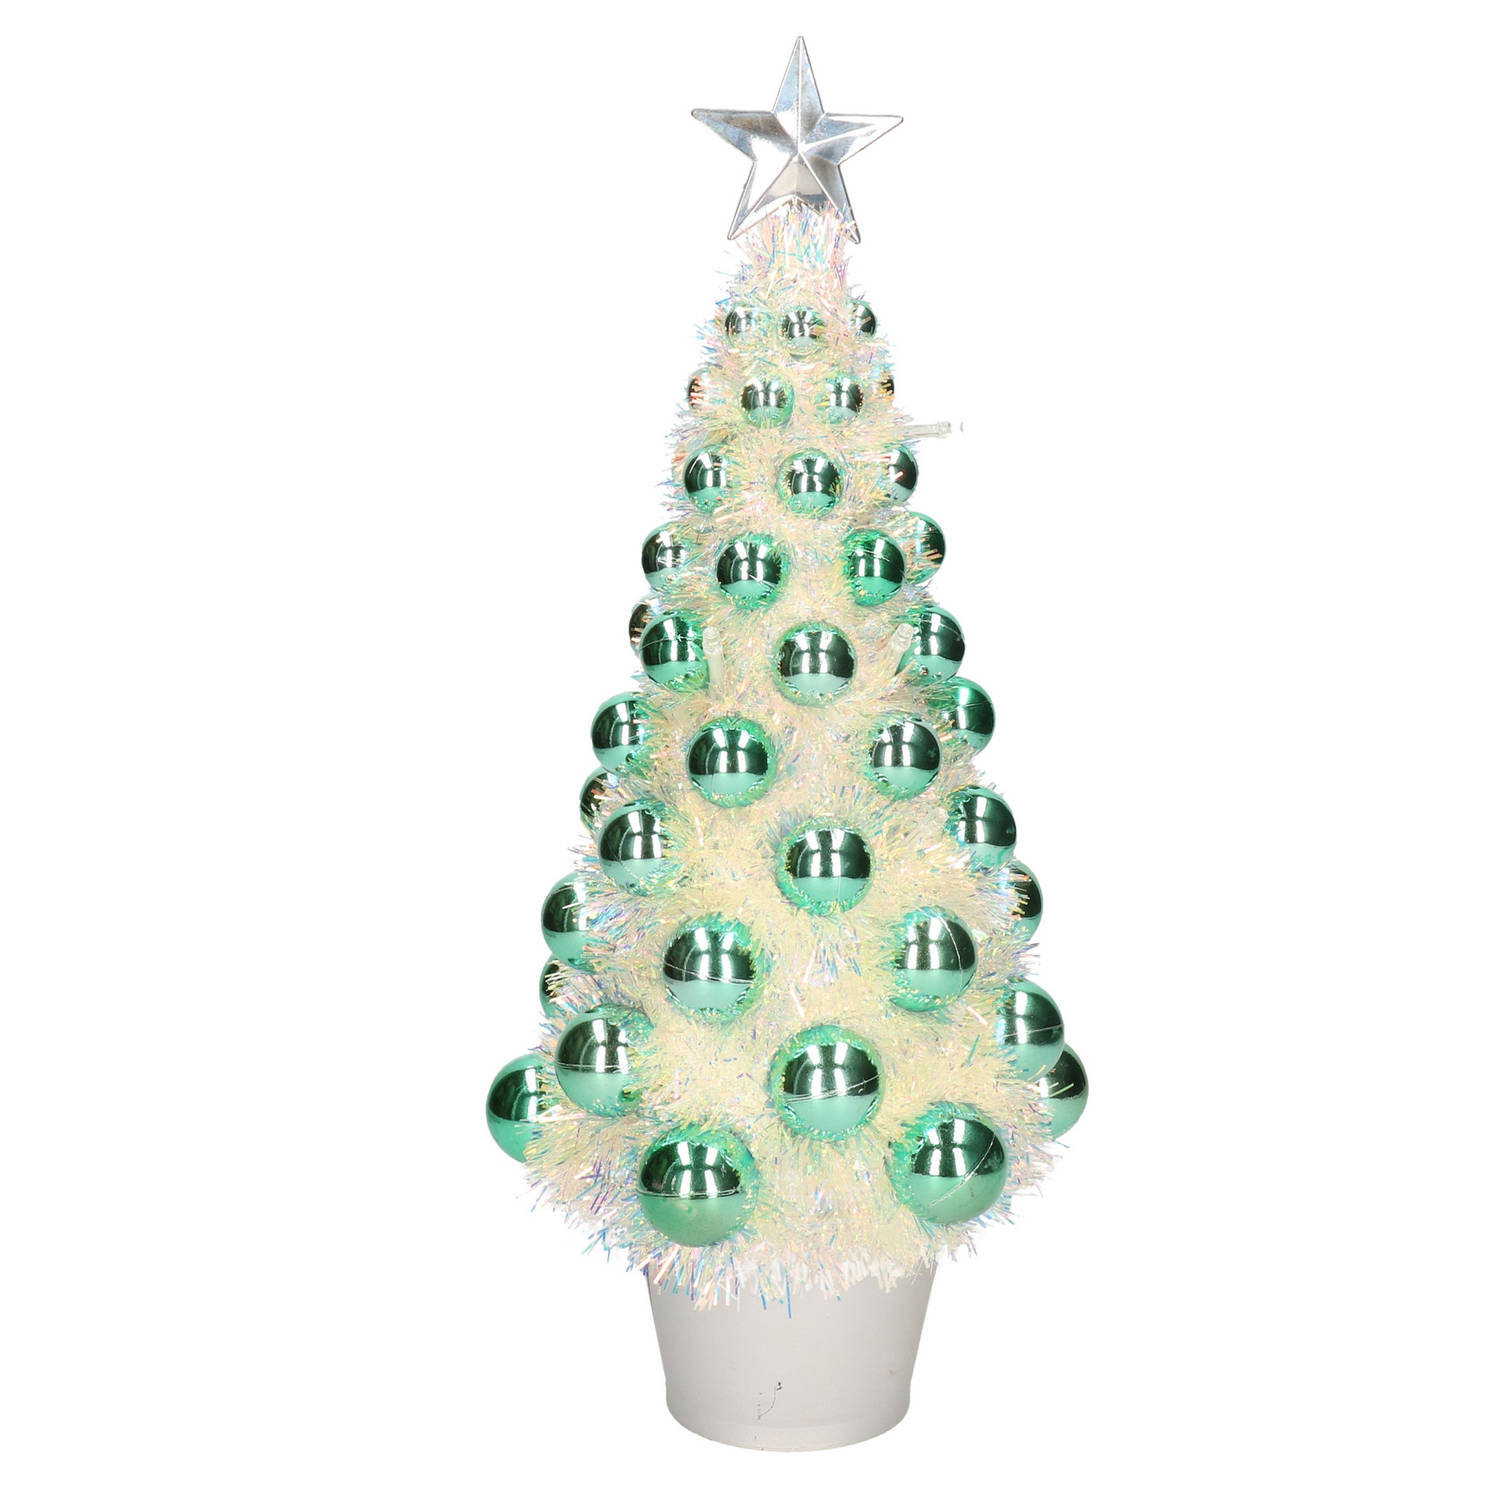 Complete Mini Kunst Kerstboom-Kunstboom Groen Met Lichtjes 40 Cm Kunstkerstboom